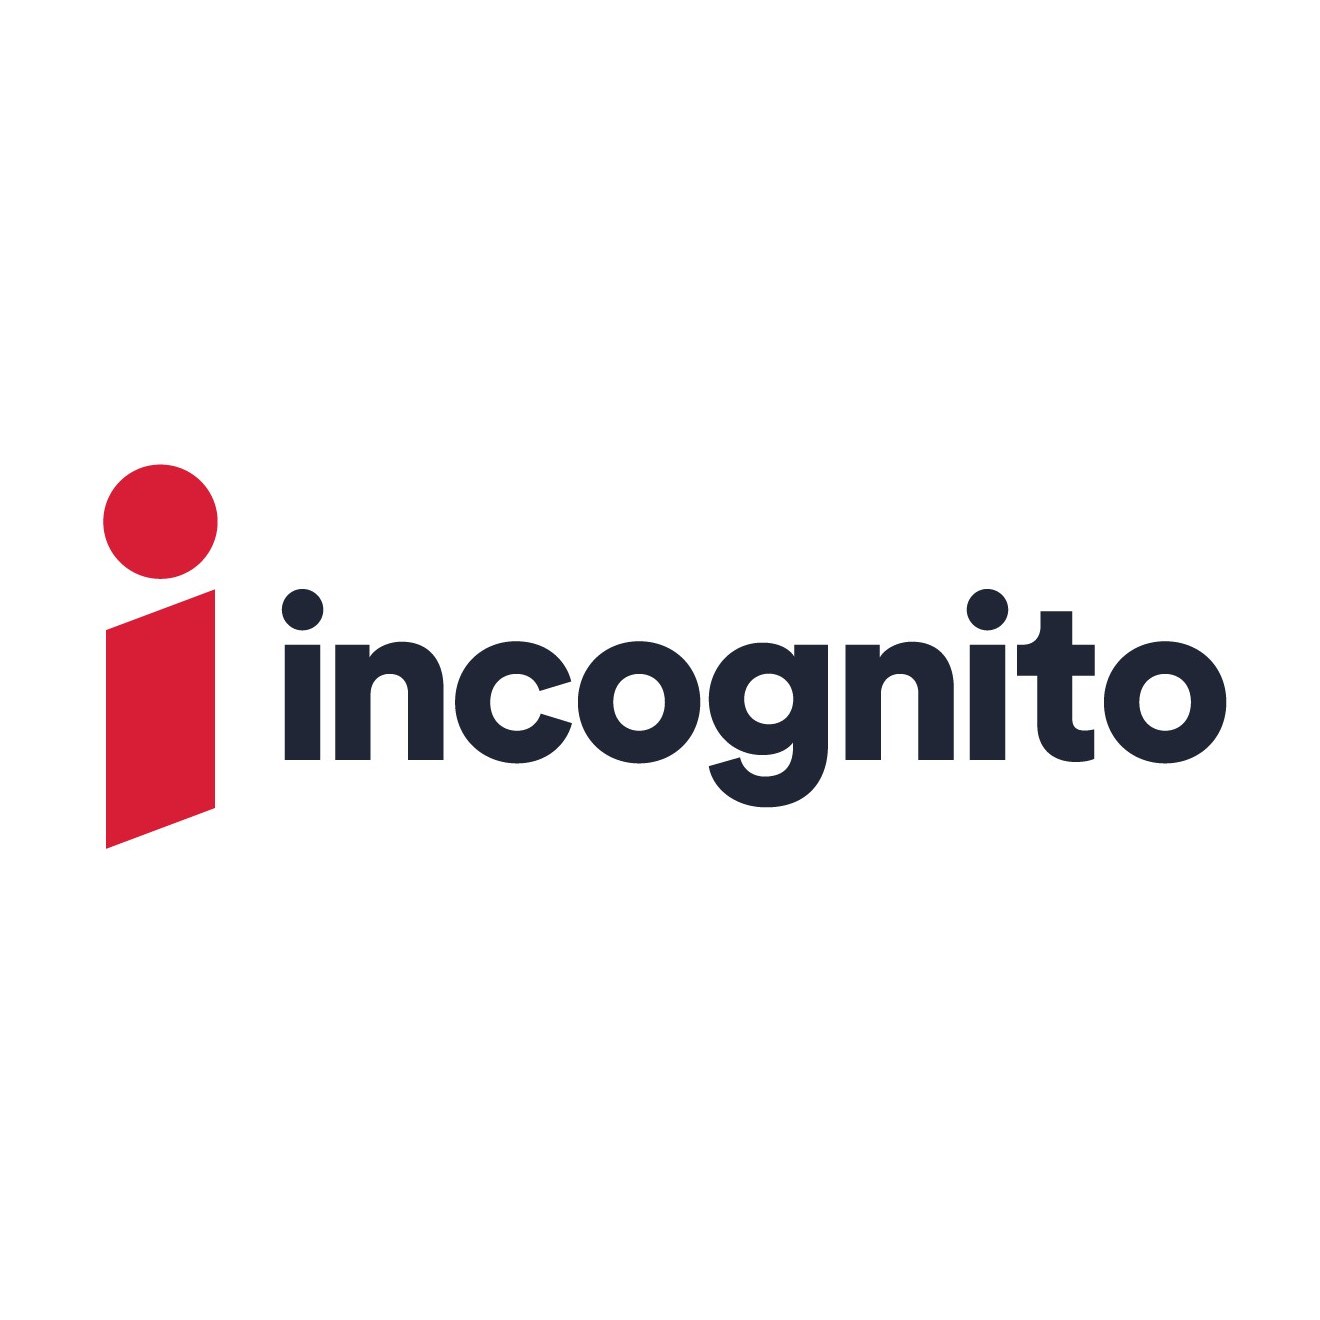 Incognito Market